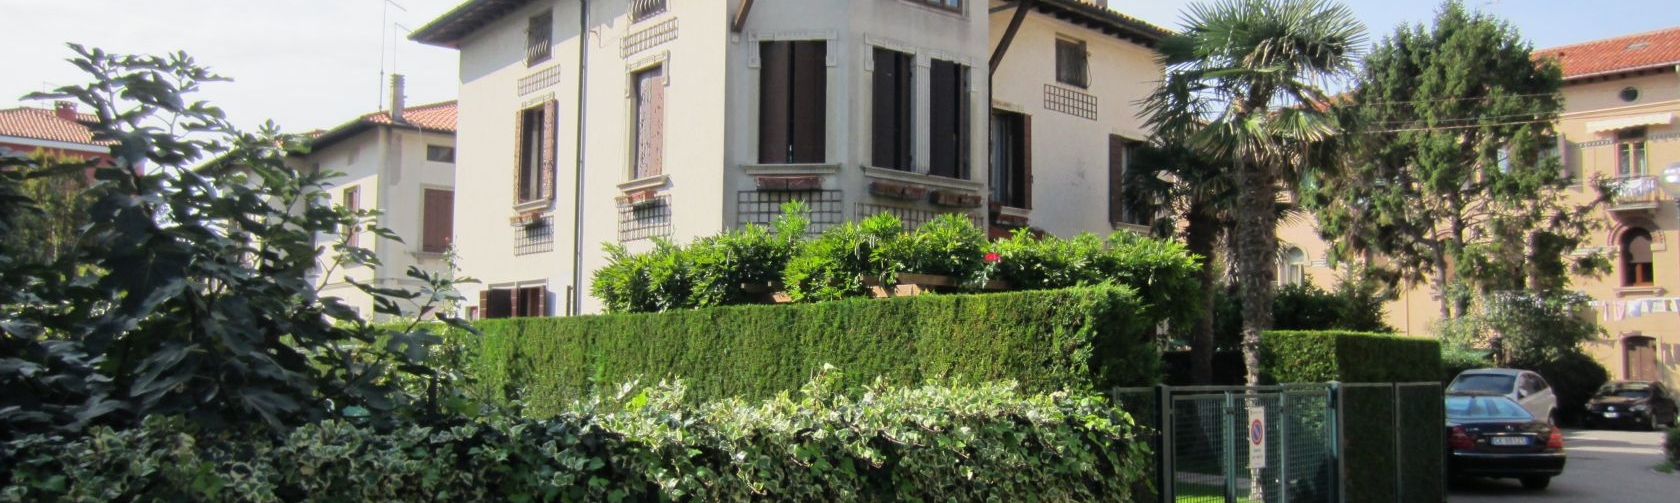 Agenzia immobiliare - Acquistare casa Venezia Lido